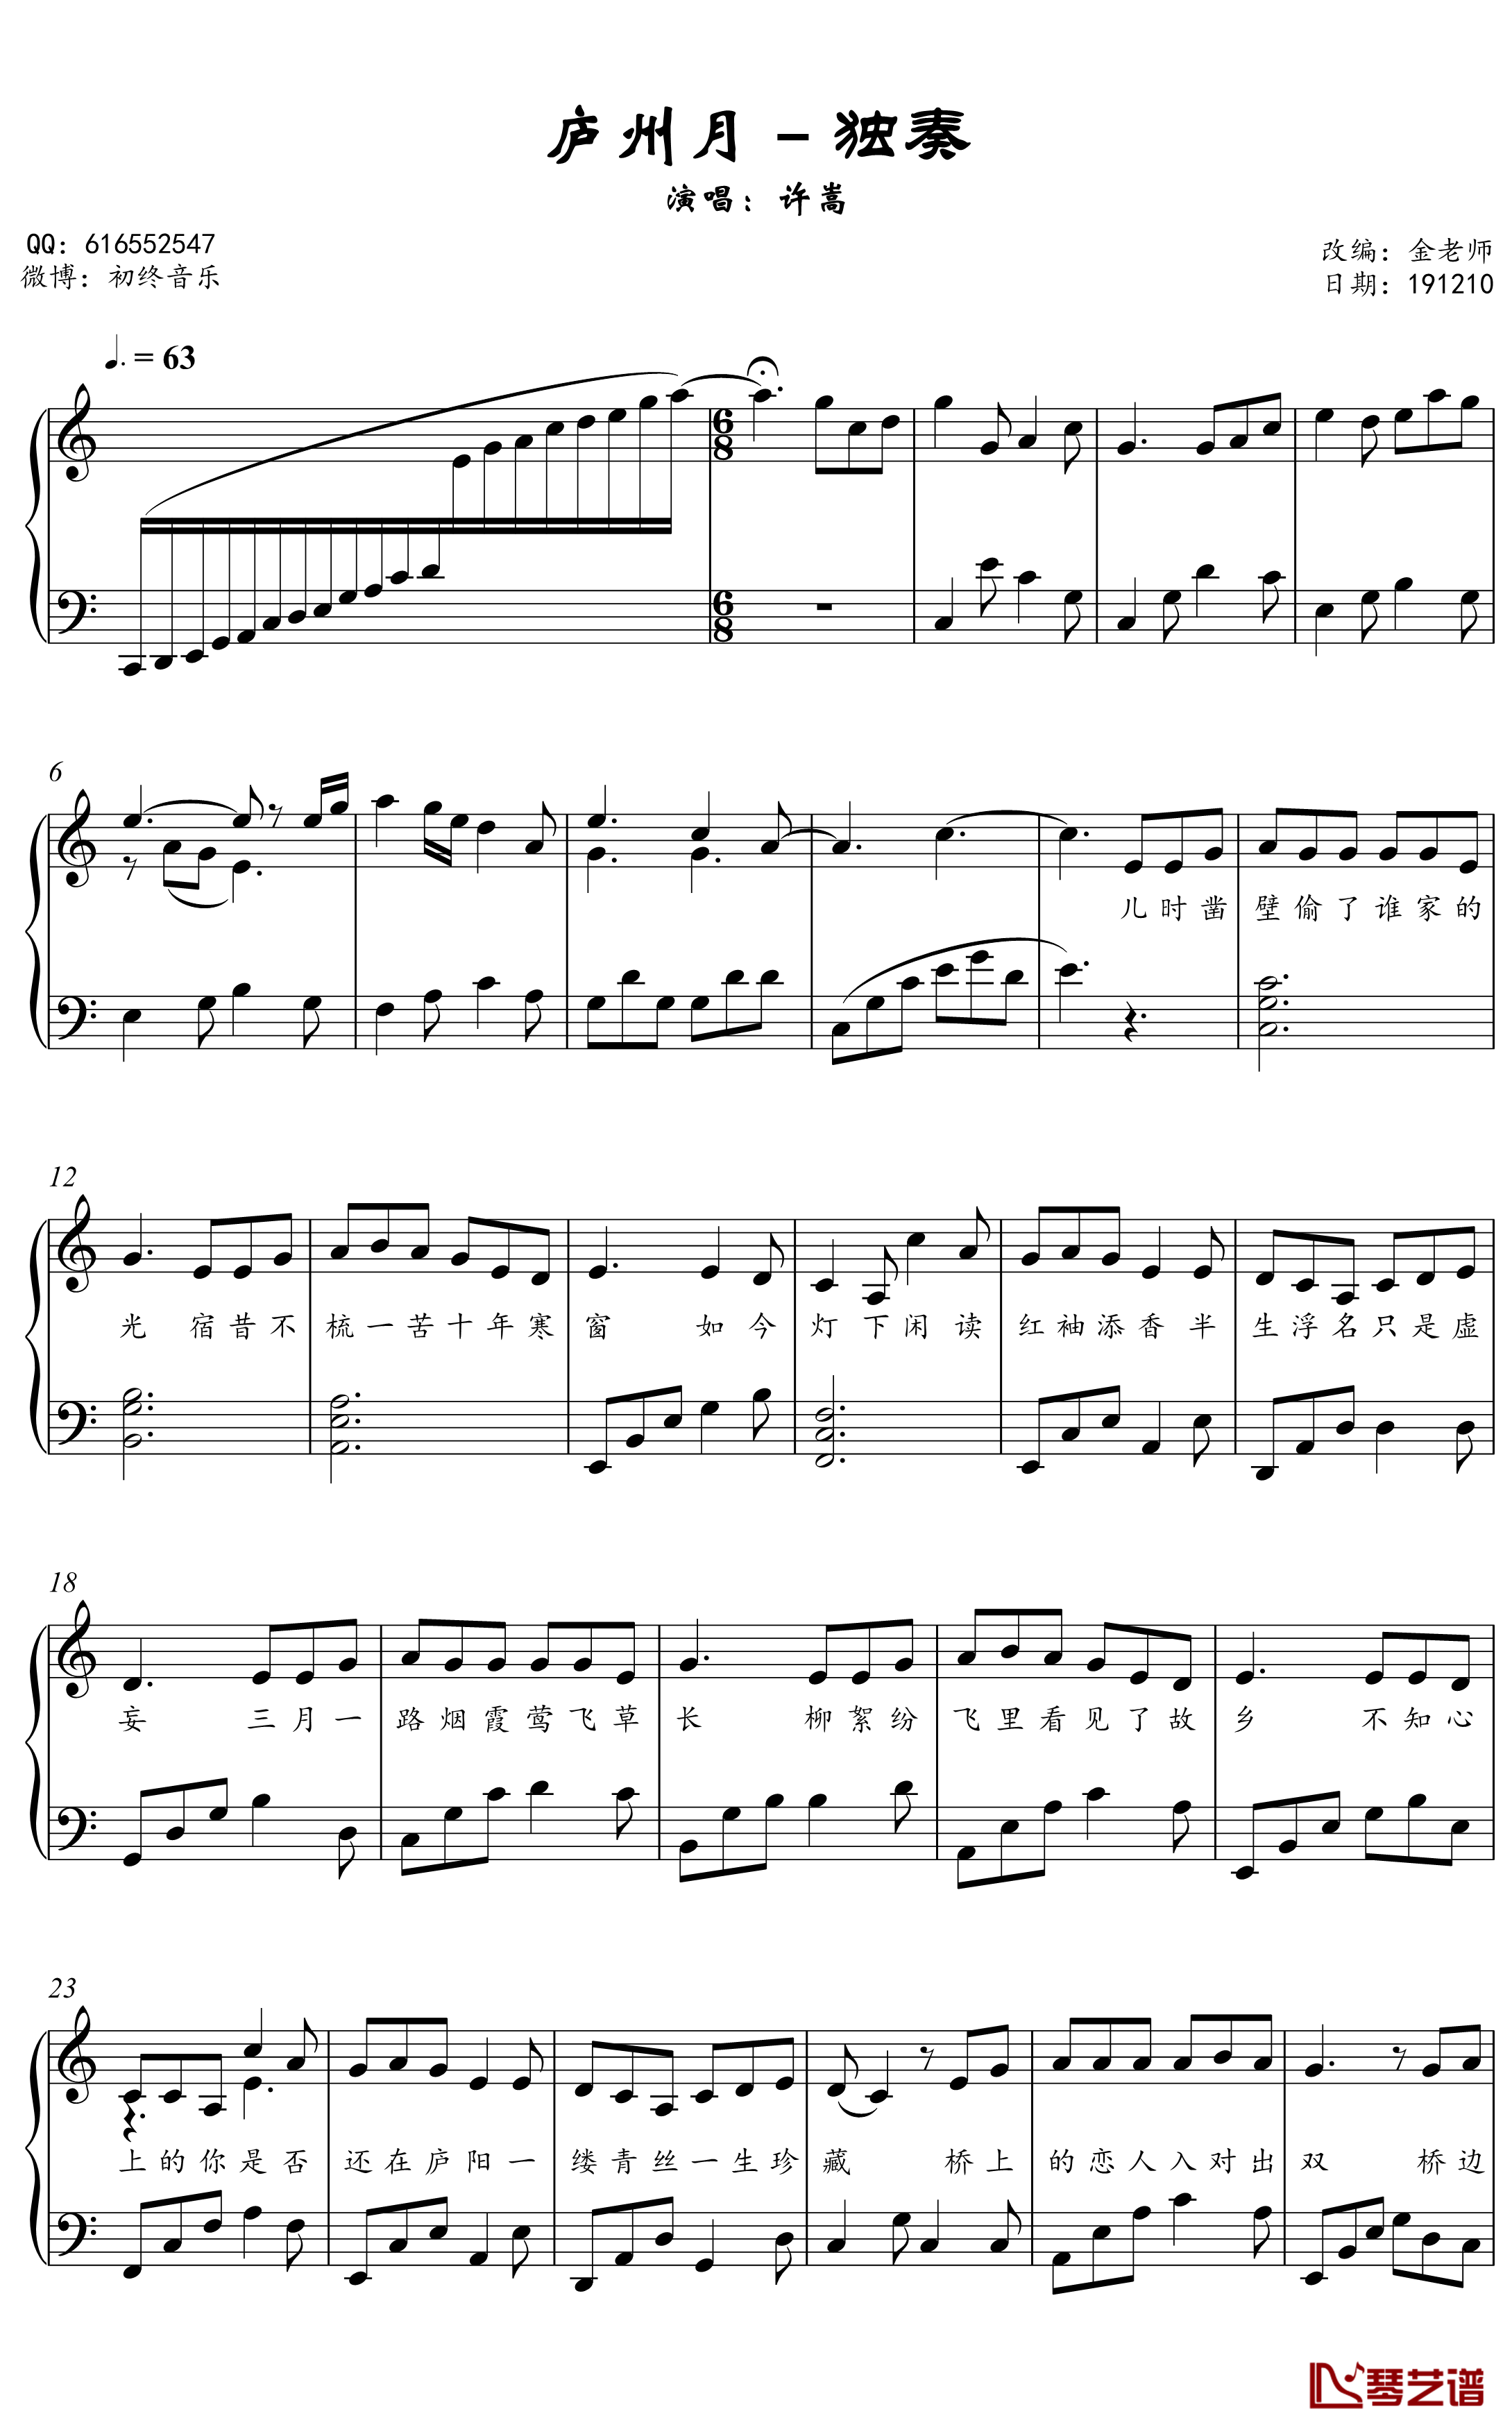 庐州月钢琴谱-金老师钢琴独奏谱1912102